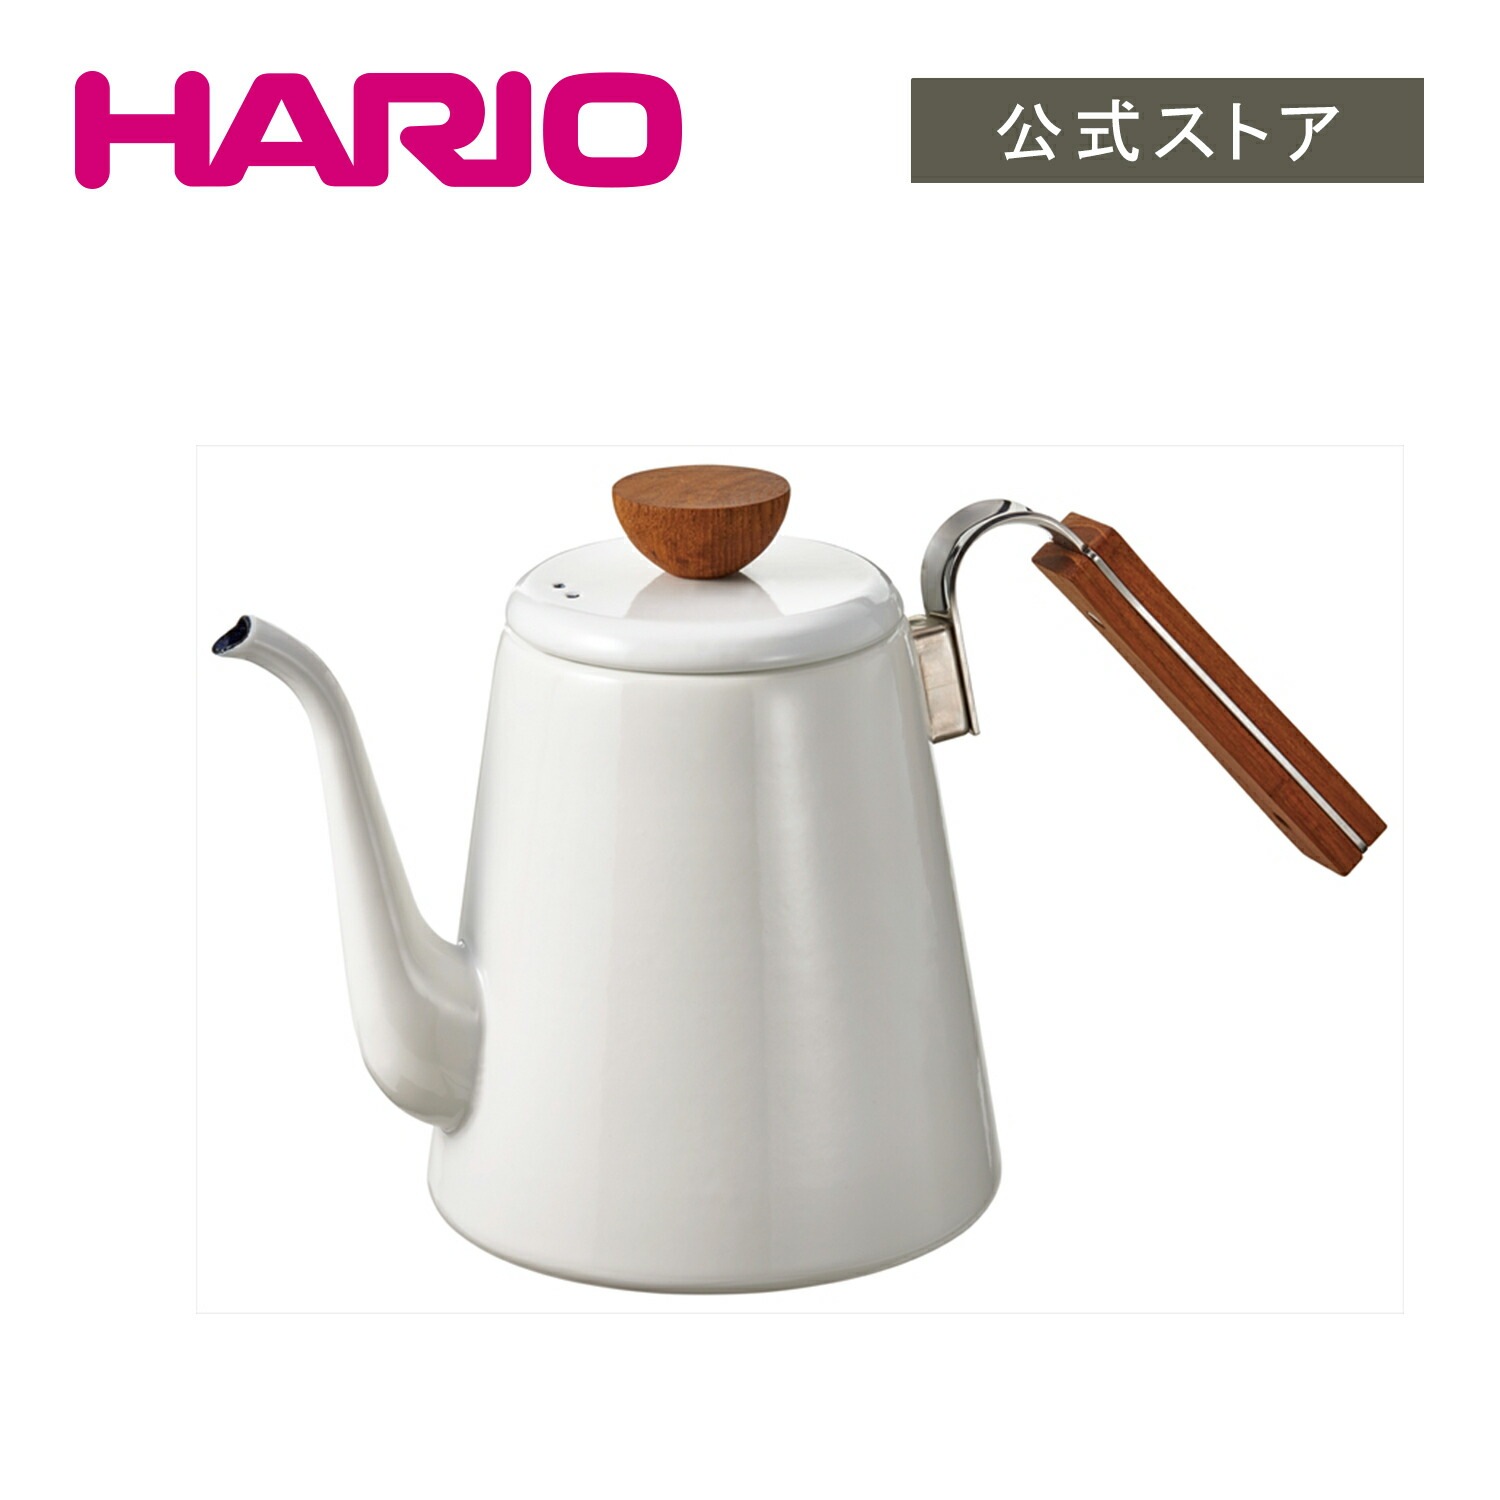 ハリオ【公式ショップ】HARIO ボナ琺瑯ドリップケトル